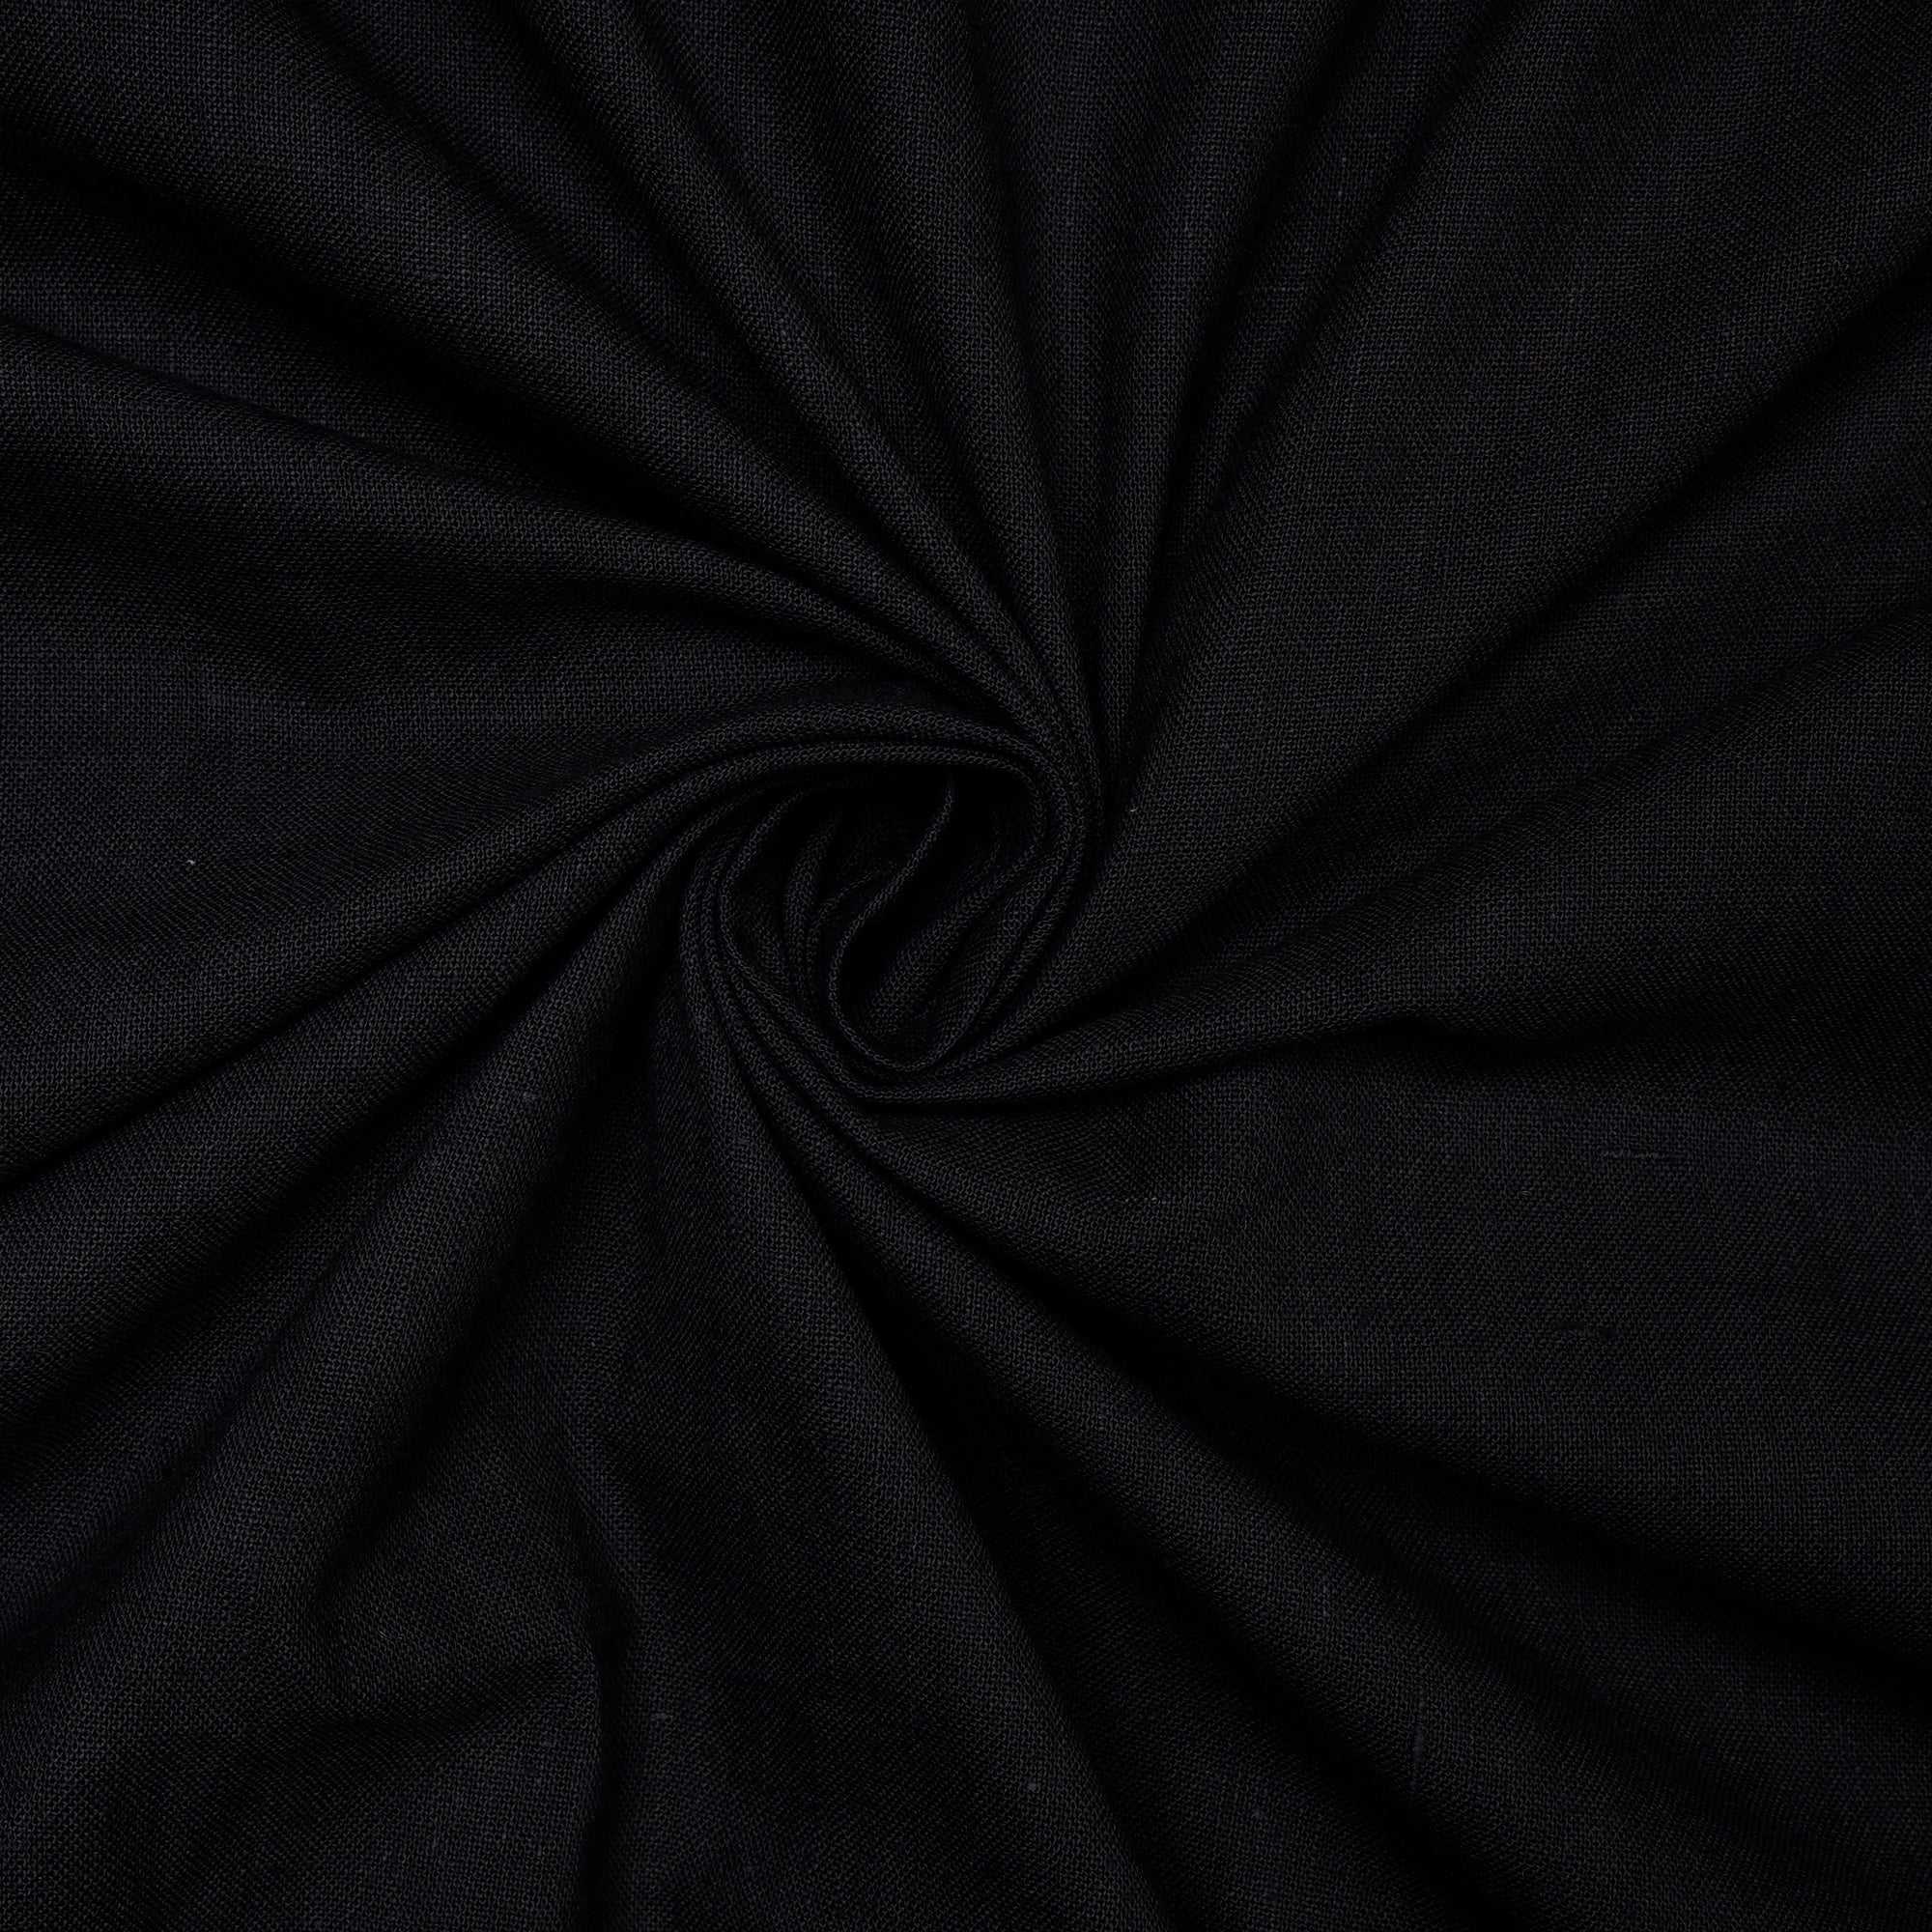 Black Woven Handspun Handwoven Cotton Fabric